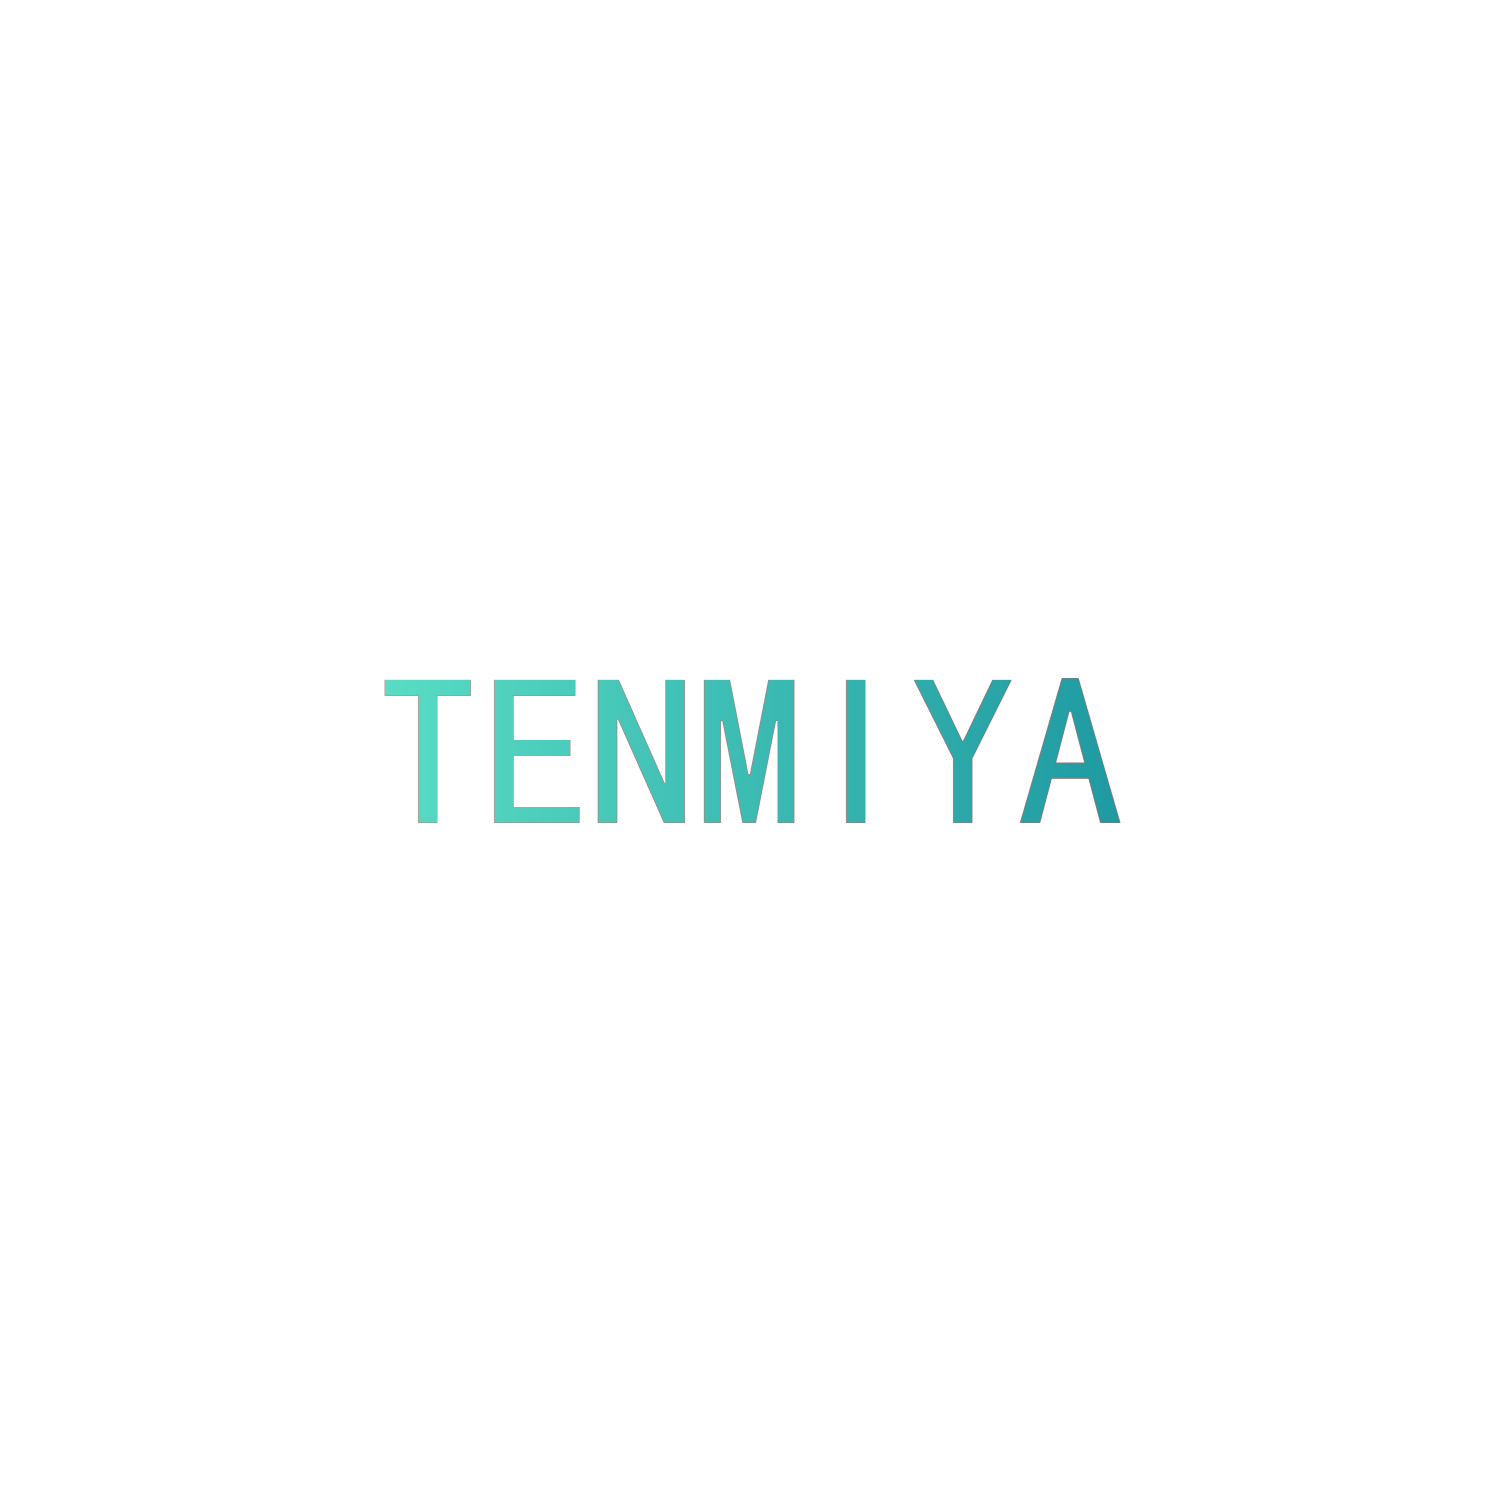 TENMIYA